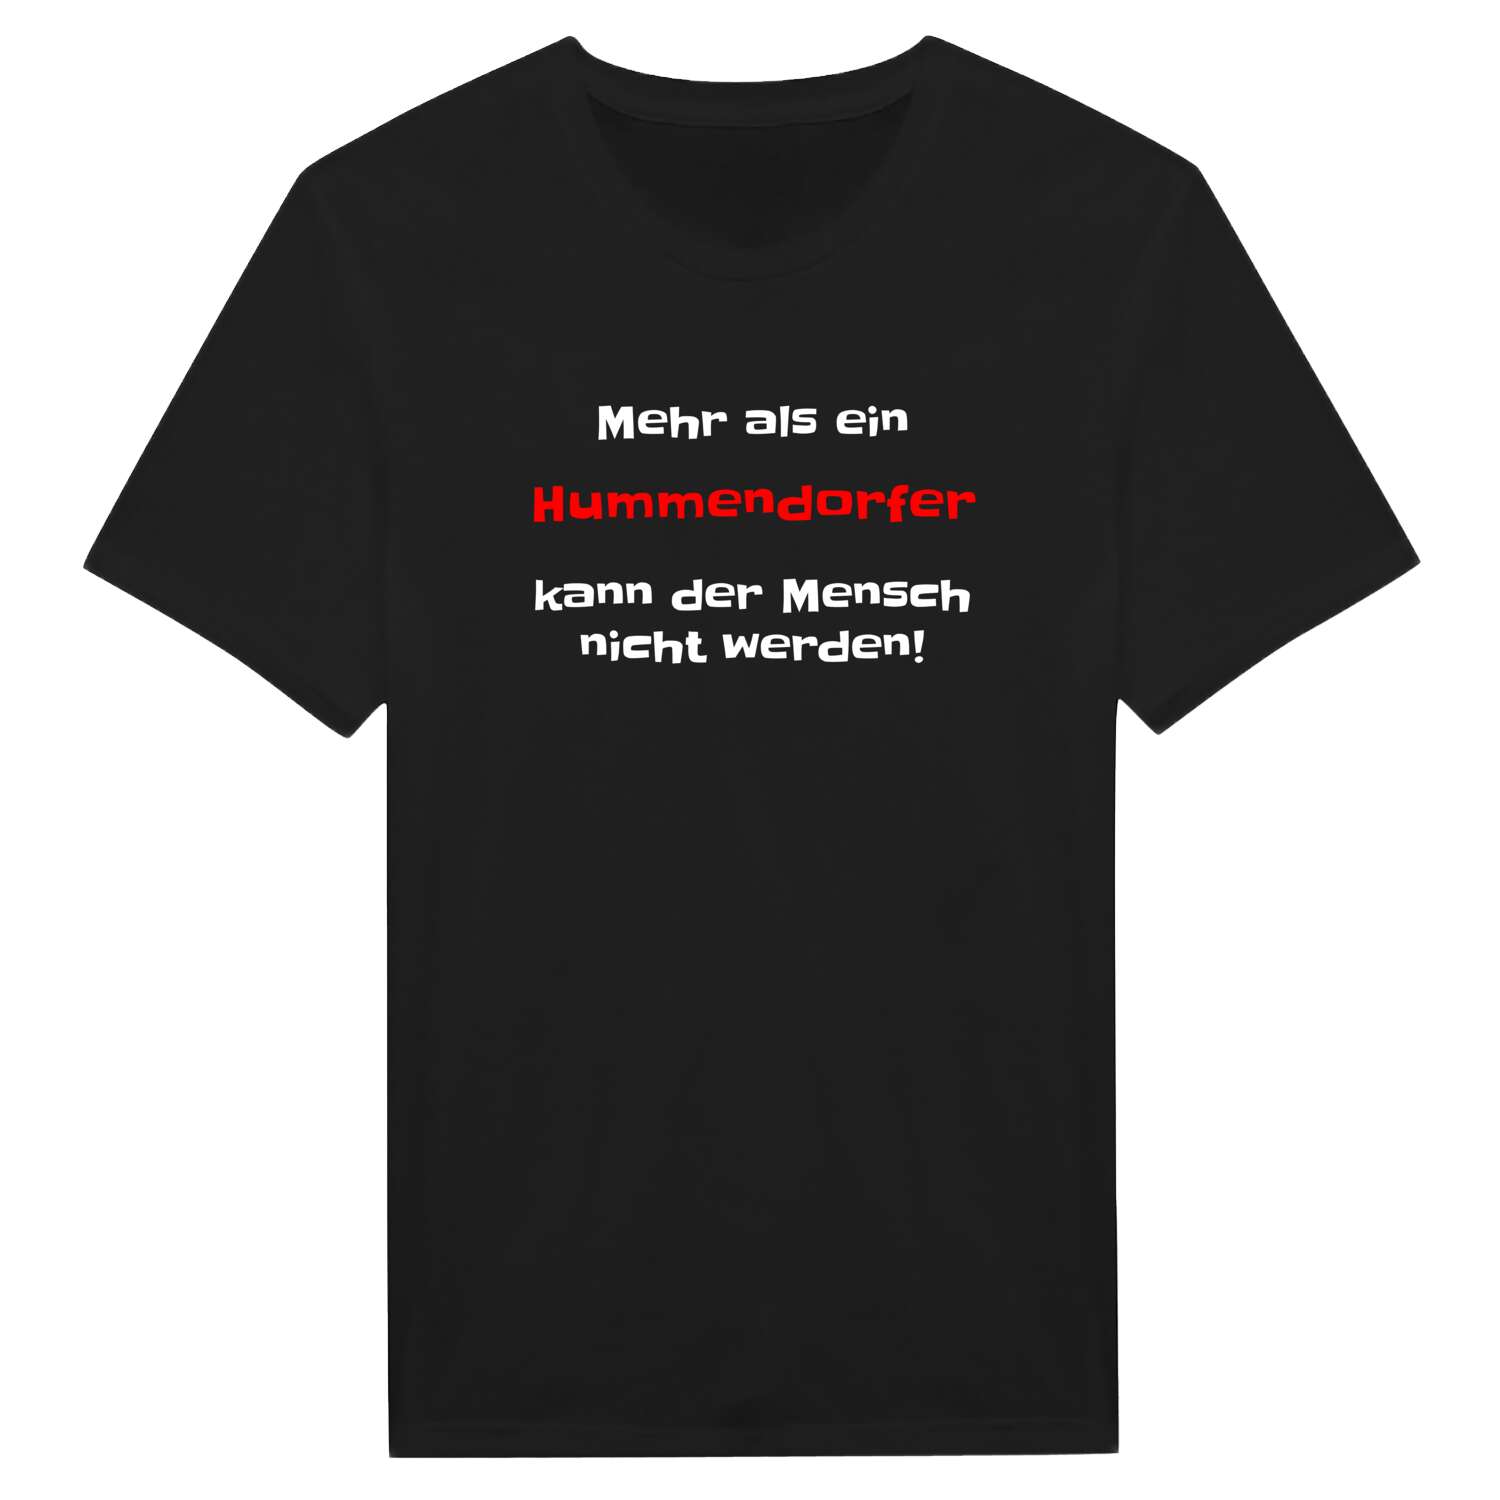 Hummendorf T-Shirt »Mehr als ein«